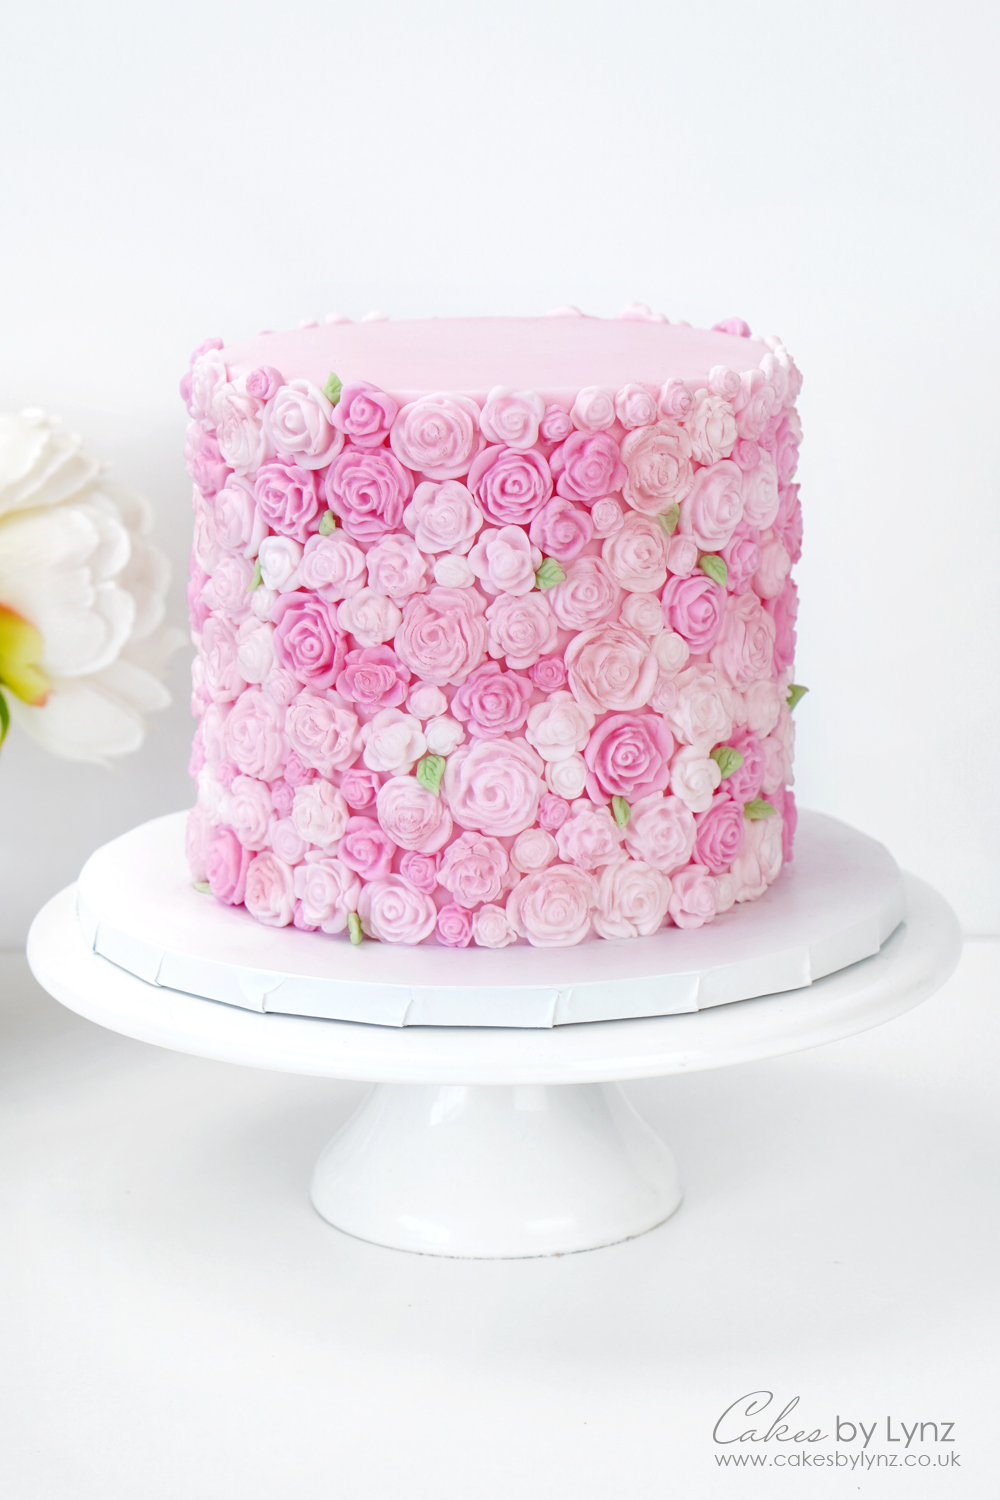 Rose texture cake design tutorial